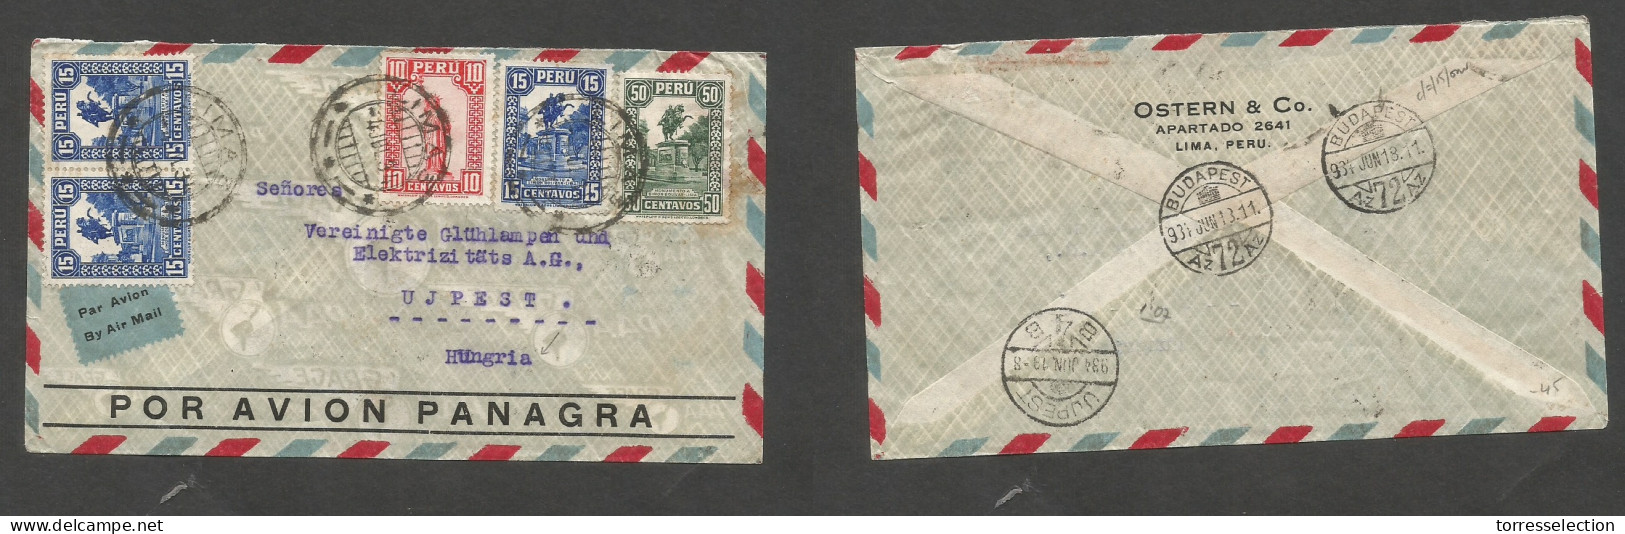 PERU. 1934 (4 June) Lima - Hungary, Ujpest (13 June) Air Multifkd Env, At 1,05 Ps Rate. VF + Air Label. SALE. - Peru